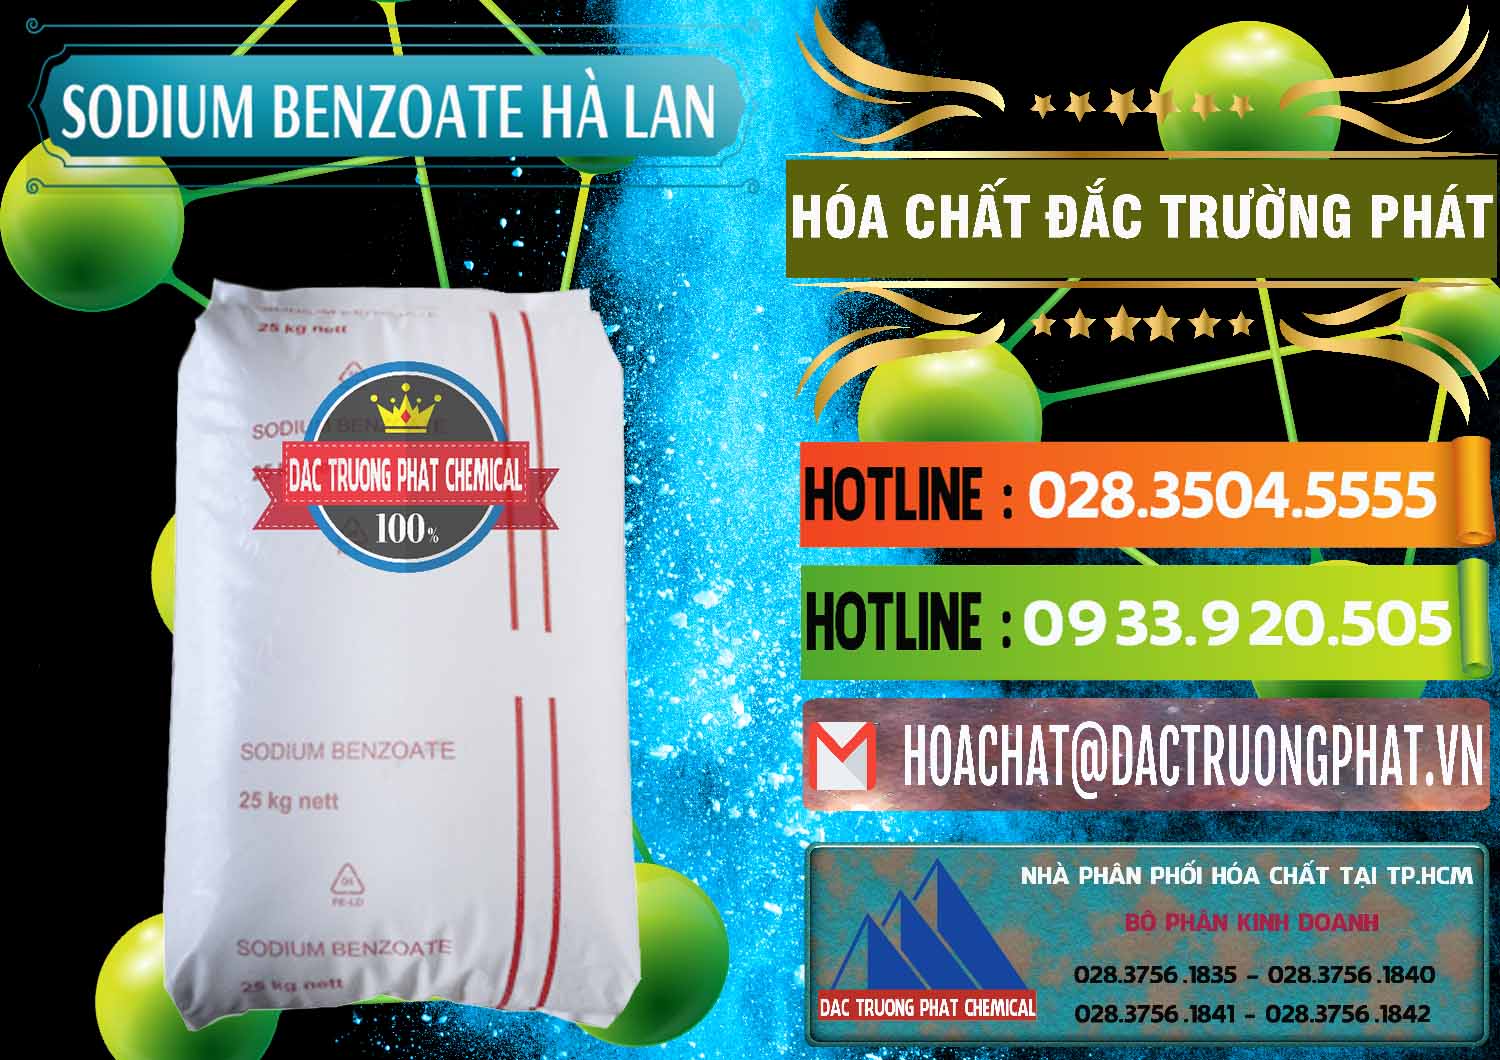 Nơi chuyên nhập khẩu và bán Sodium Benzoate - Mốc Bột Chữ Cam Hà Lan Netherlands - 0360 - Đơn vị phân phối ( cung cấp ) hóa chất tại TP.HCM - cungcaphoachat.com.vn